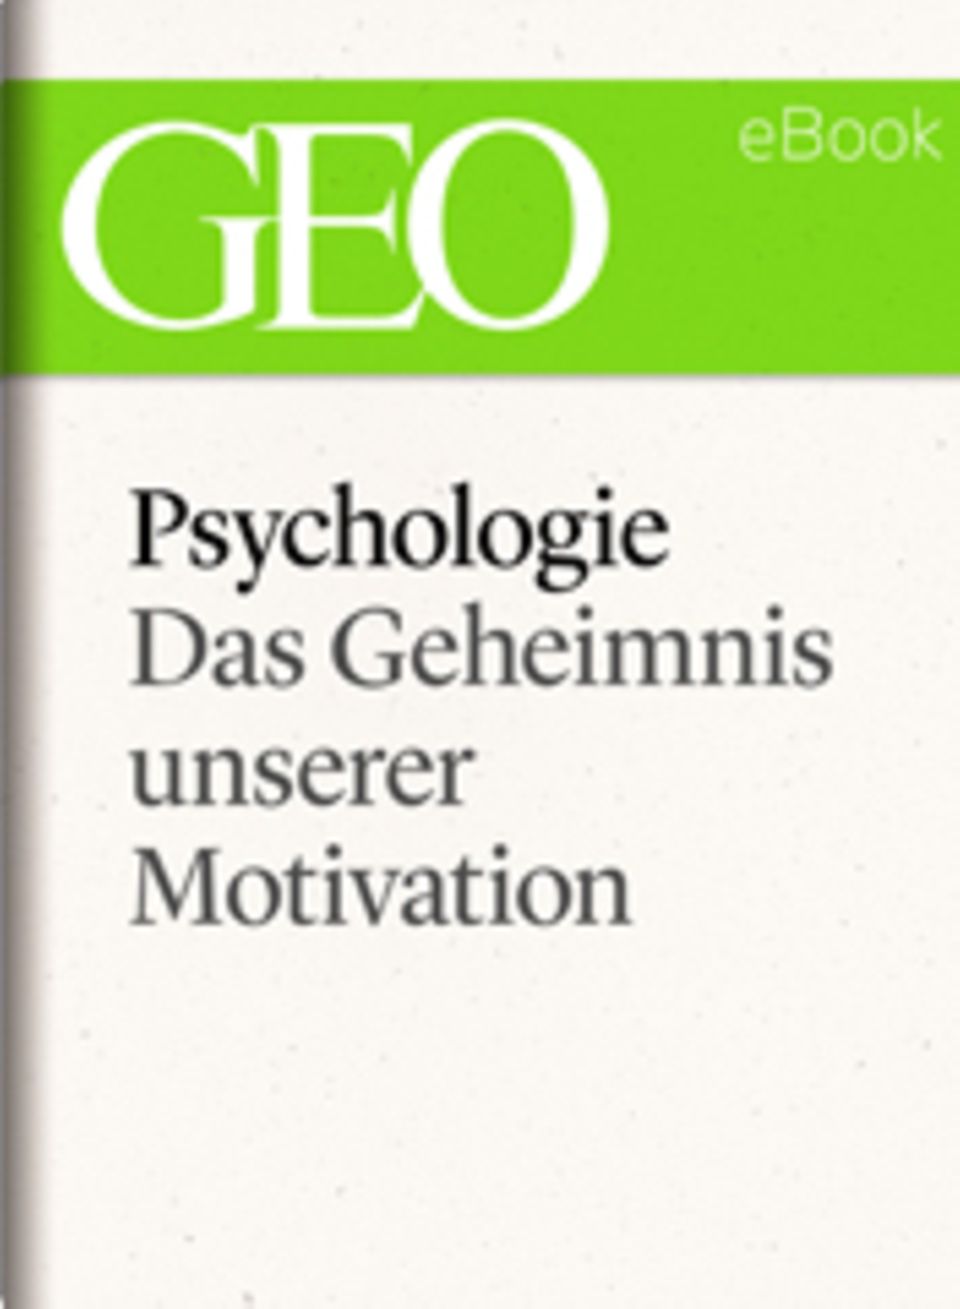 Das Geheimnis unserer Motivation: GEO eBook "Psychologie"